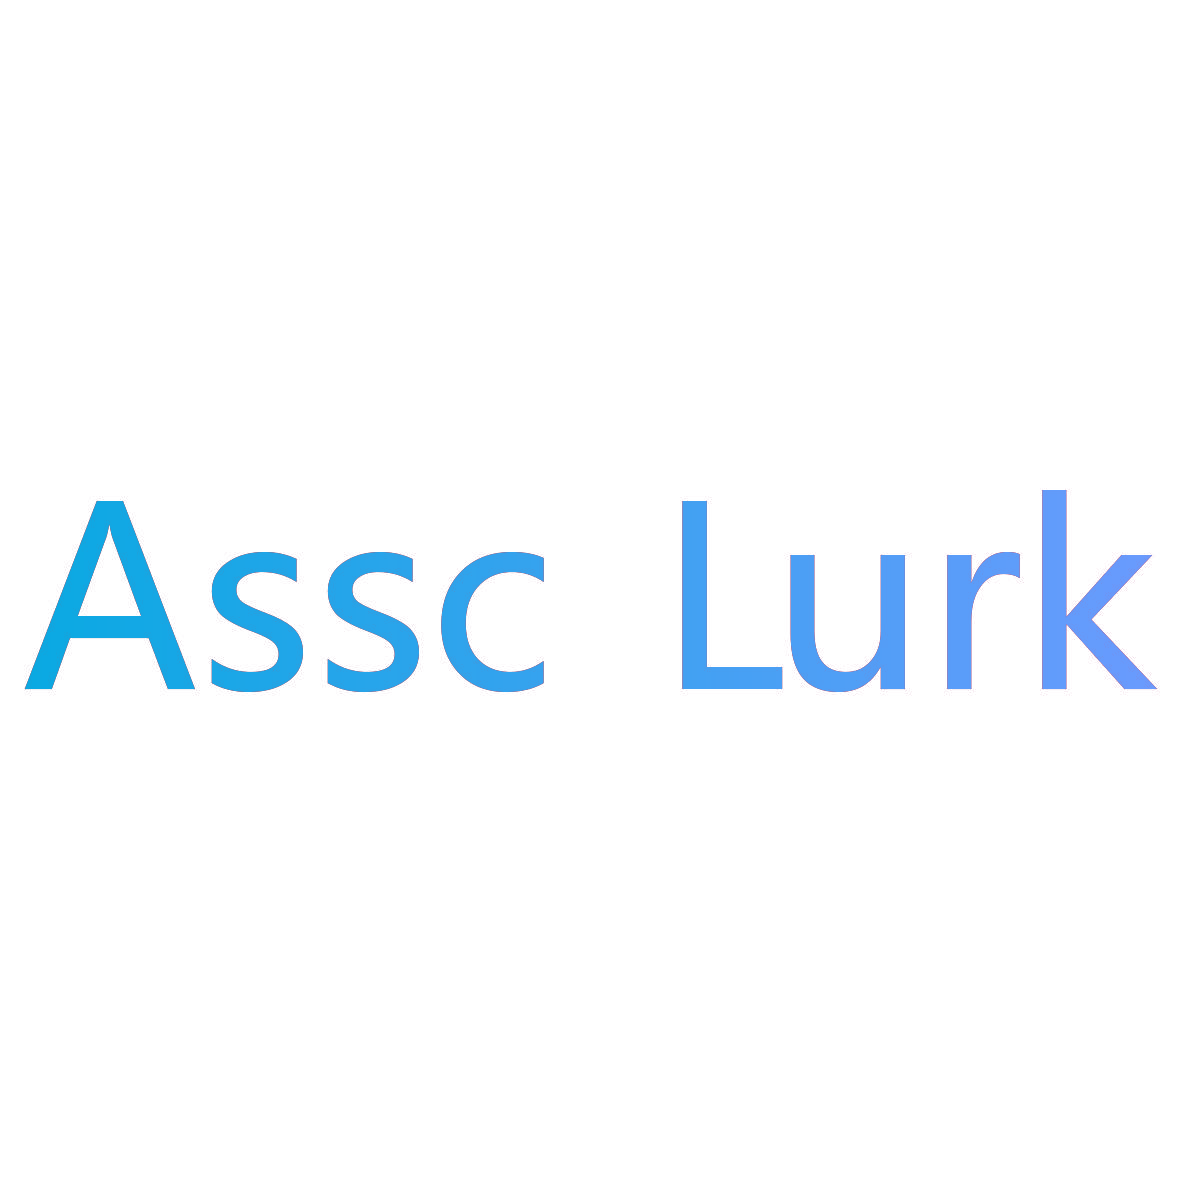 ASSC LURK